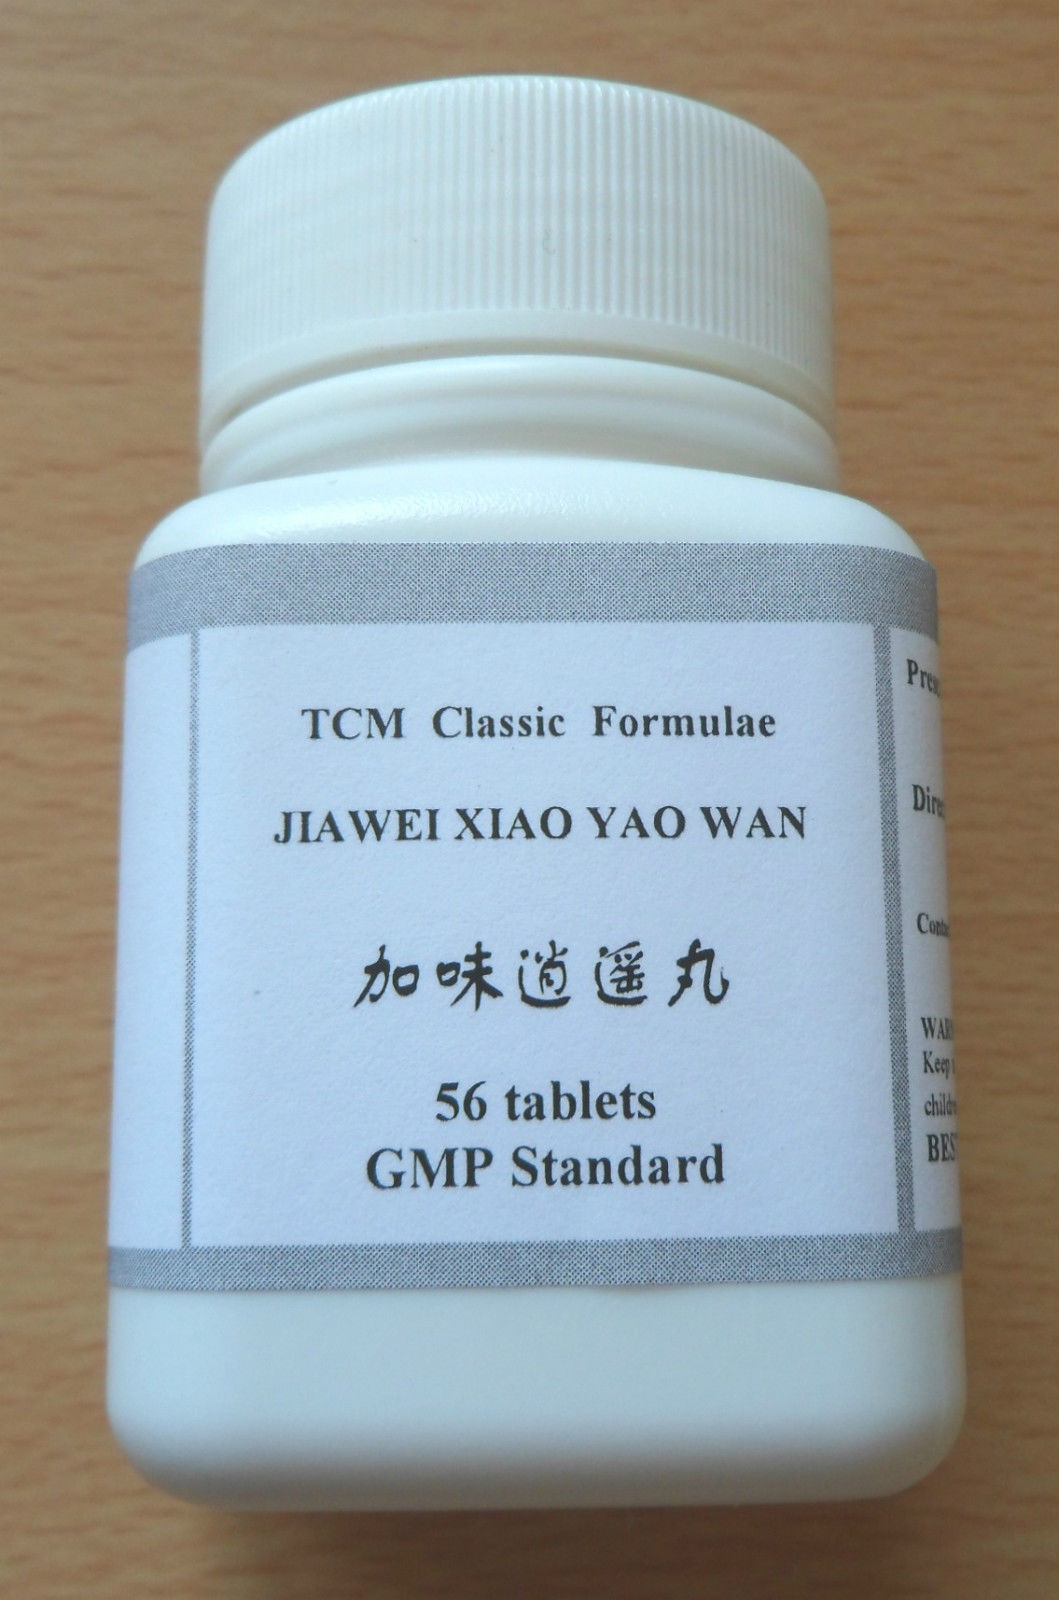 4 x Jia Wei Xiao Yao Wan Tablets, High Strength1:6